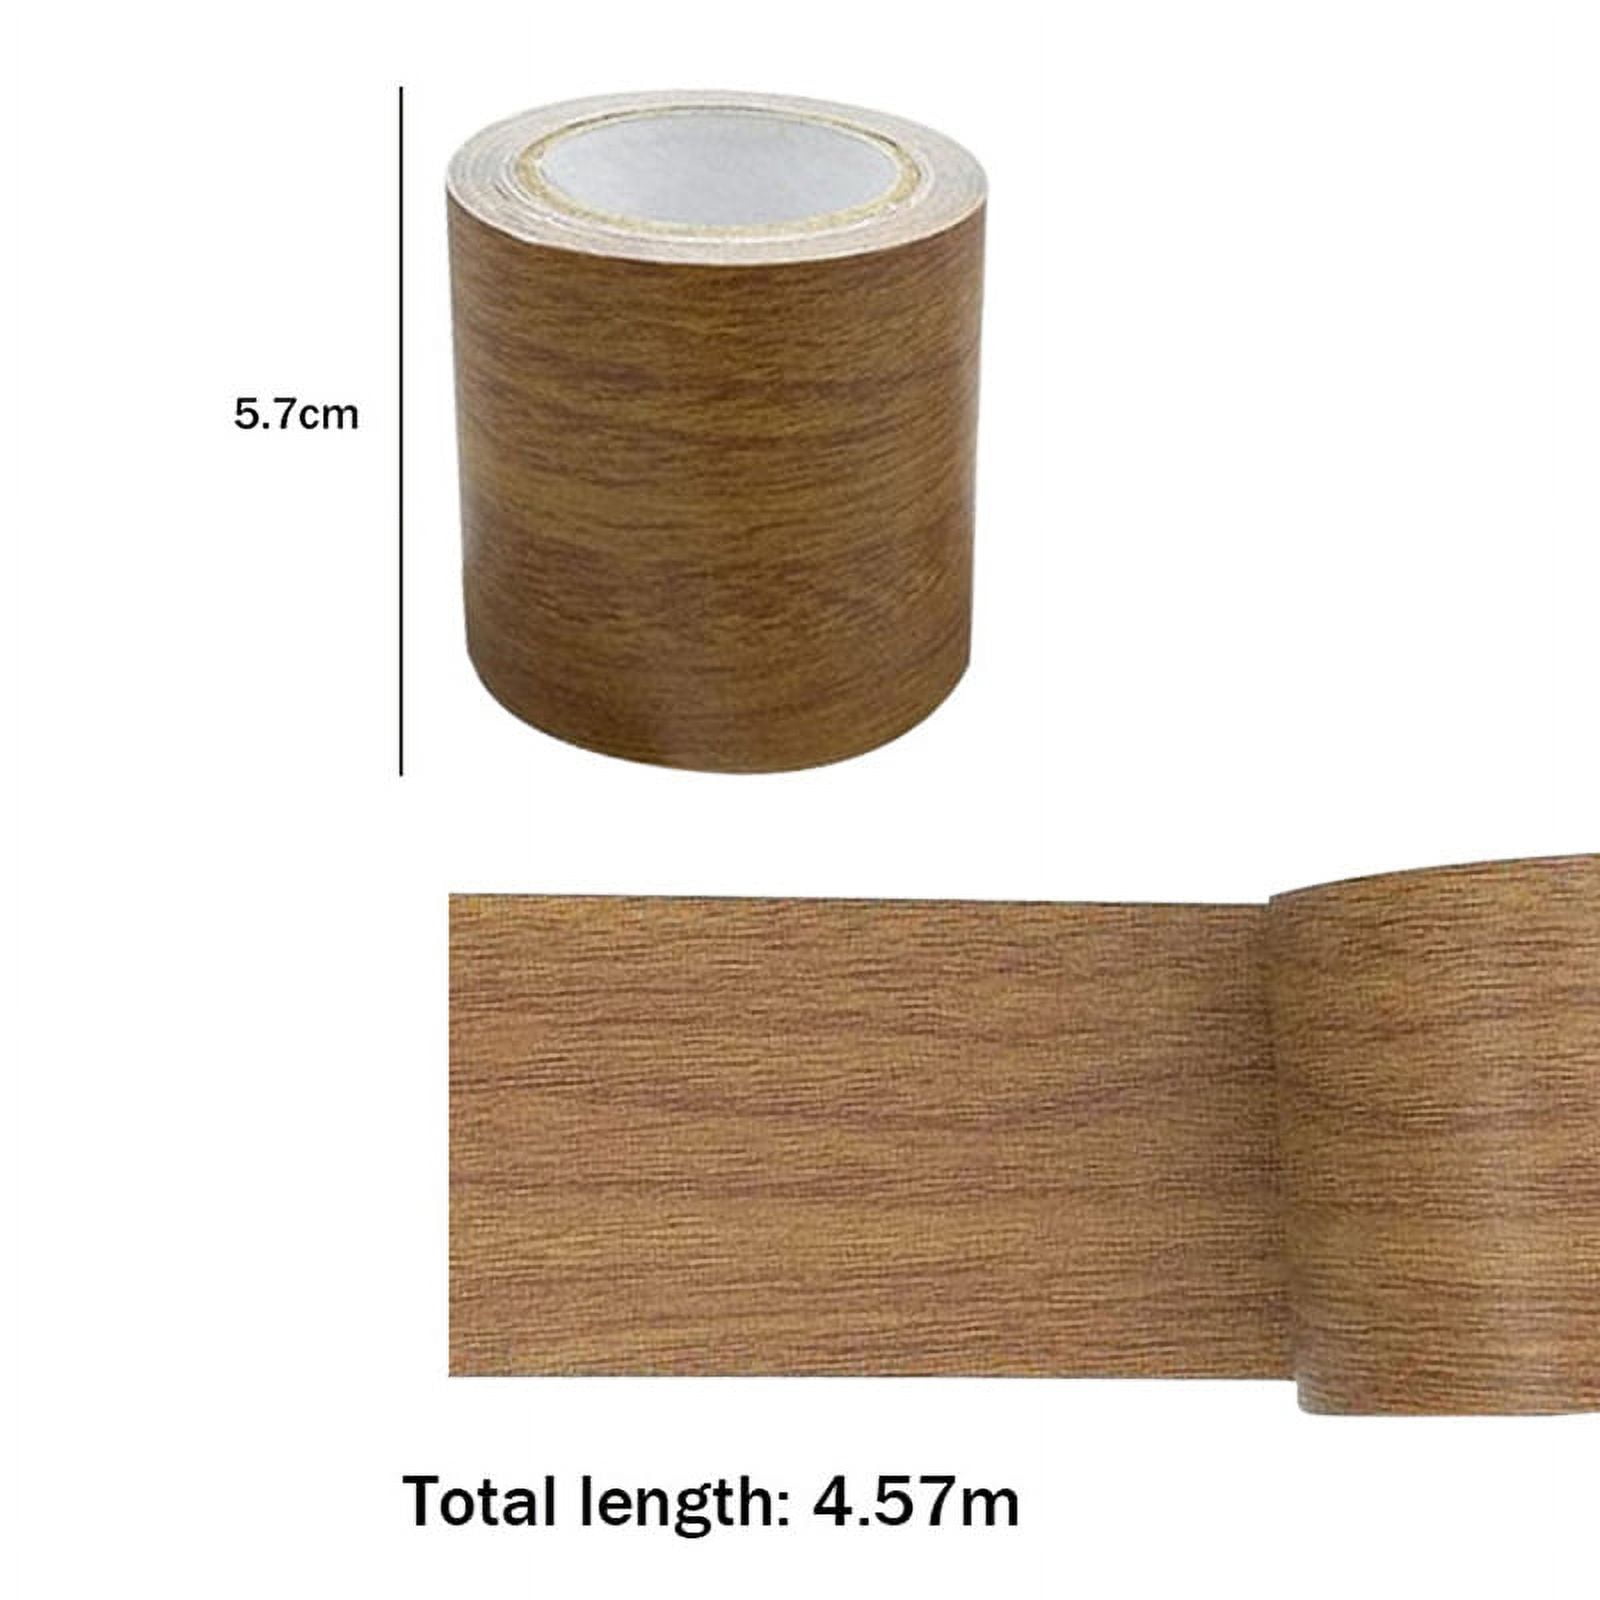 Furniture Tape, Simulation Wood Grain Tape Furniture Floor Repair Tape,  Adhesive Tape Roll Realistic Woodgrain Repair for Home Office(5.7cmx4.57m)  F6X3 